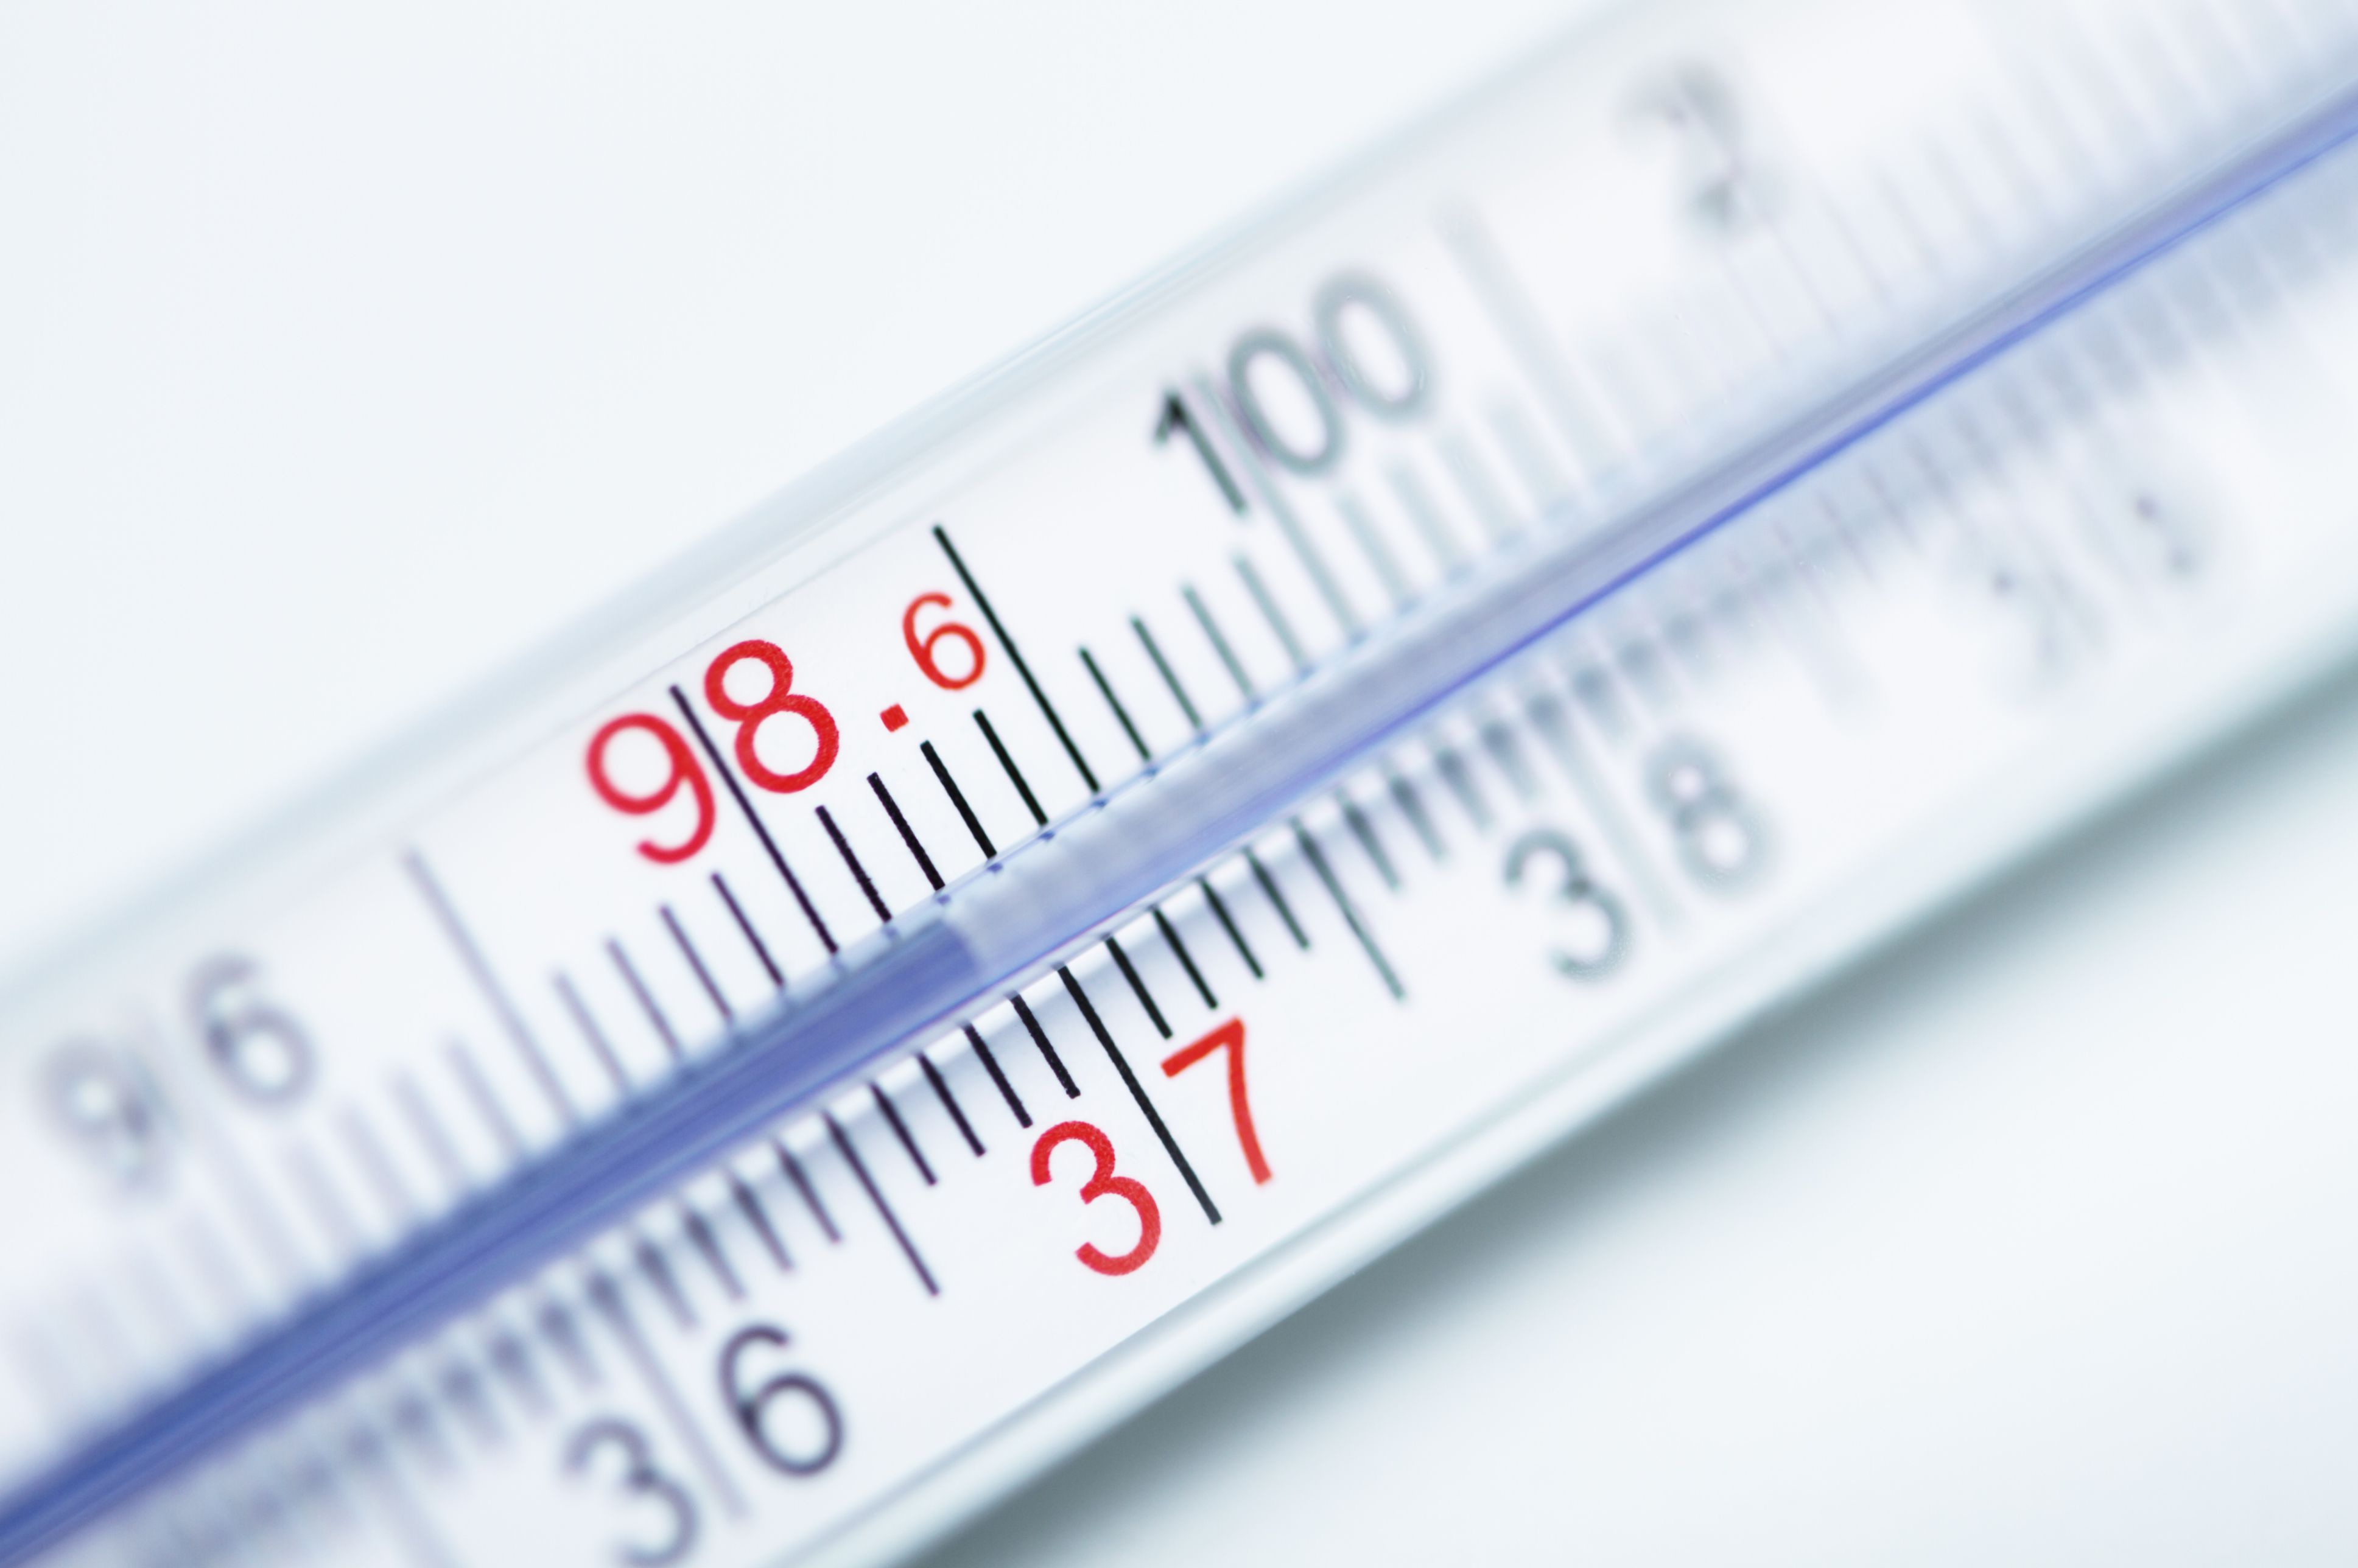 Body Temperature Fahrenheit To Celsius Conversion